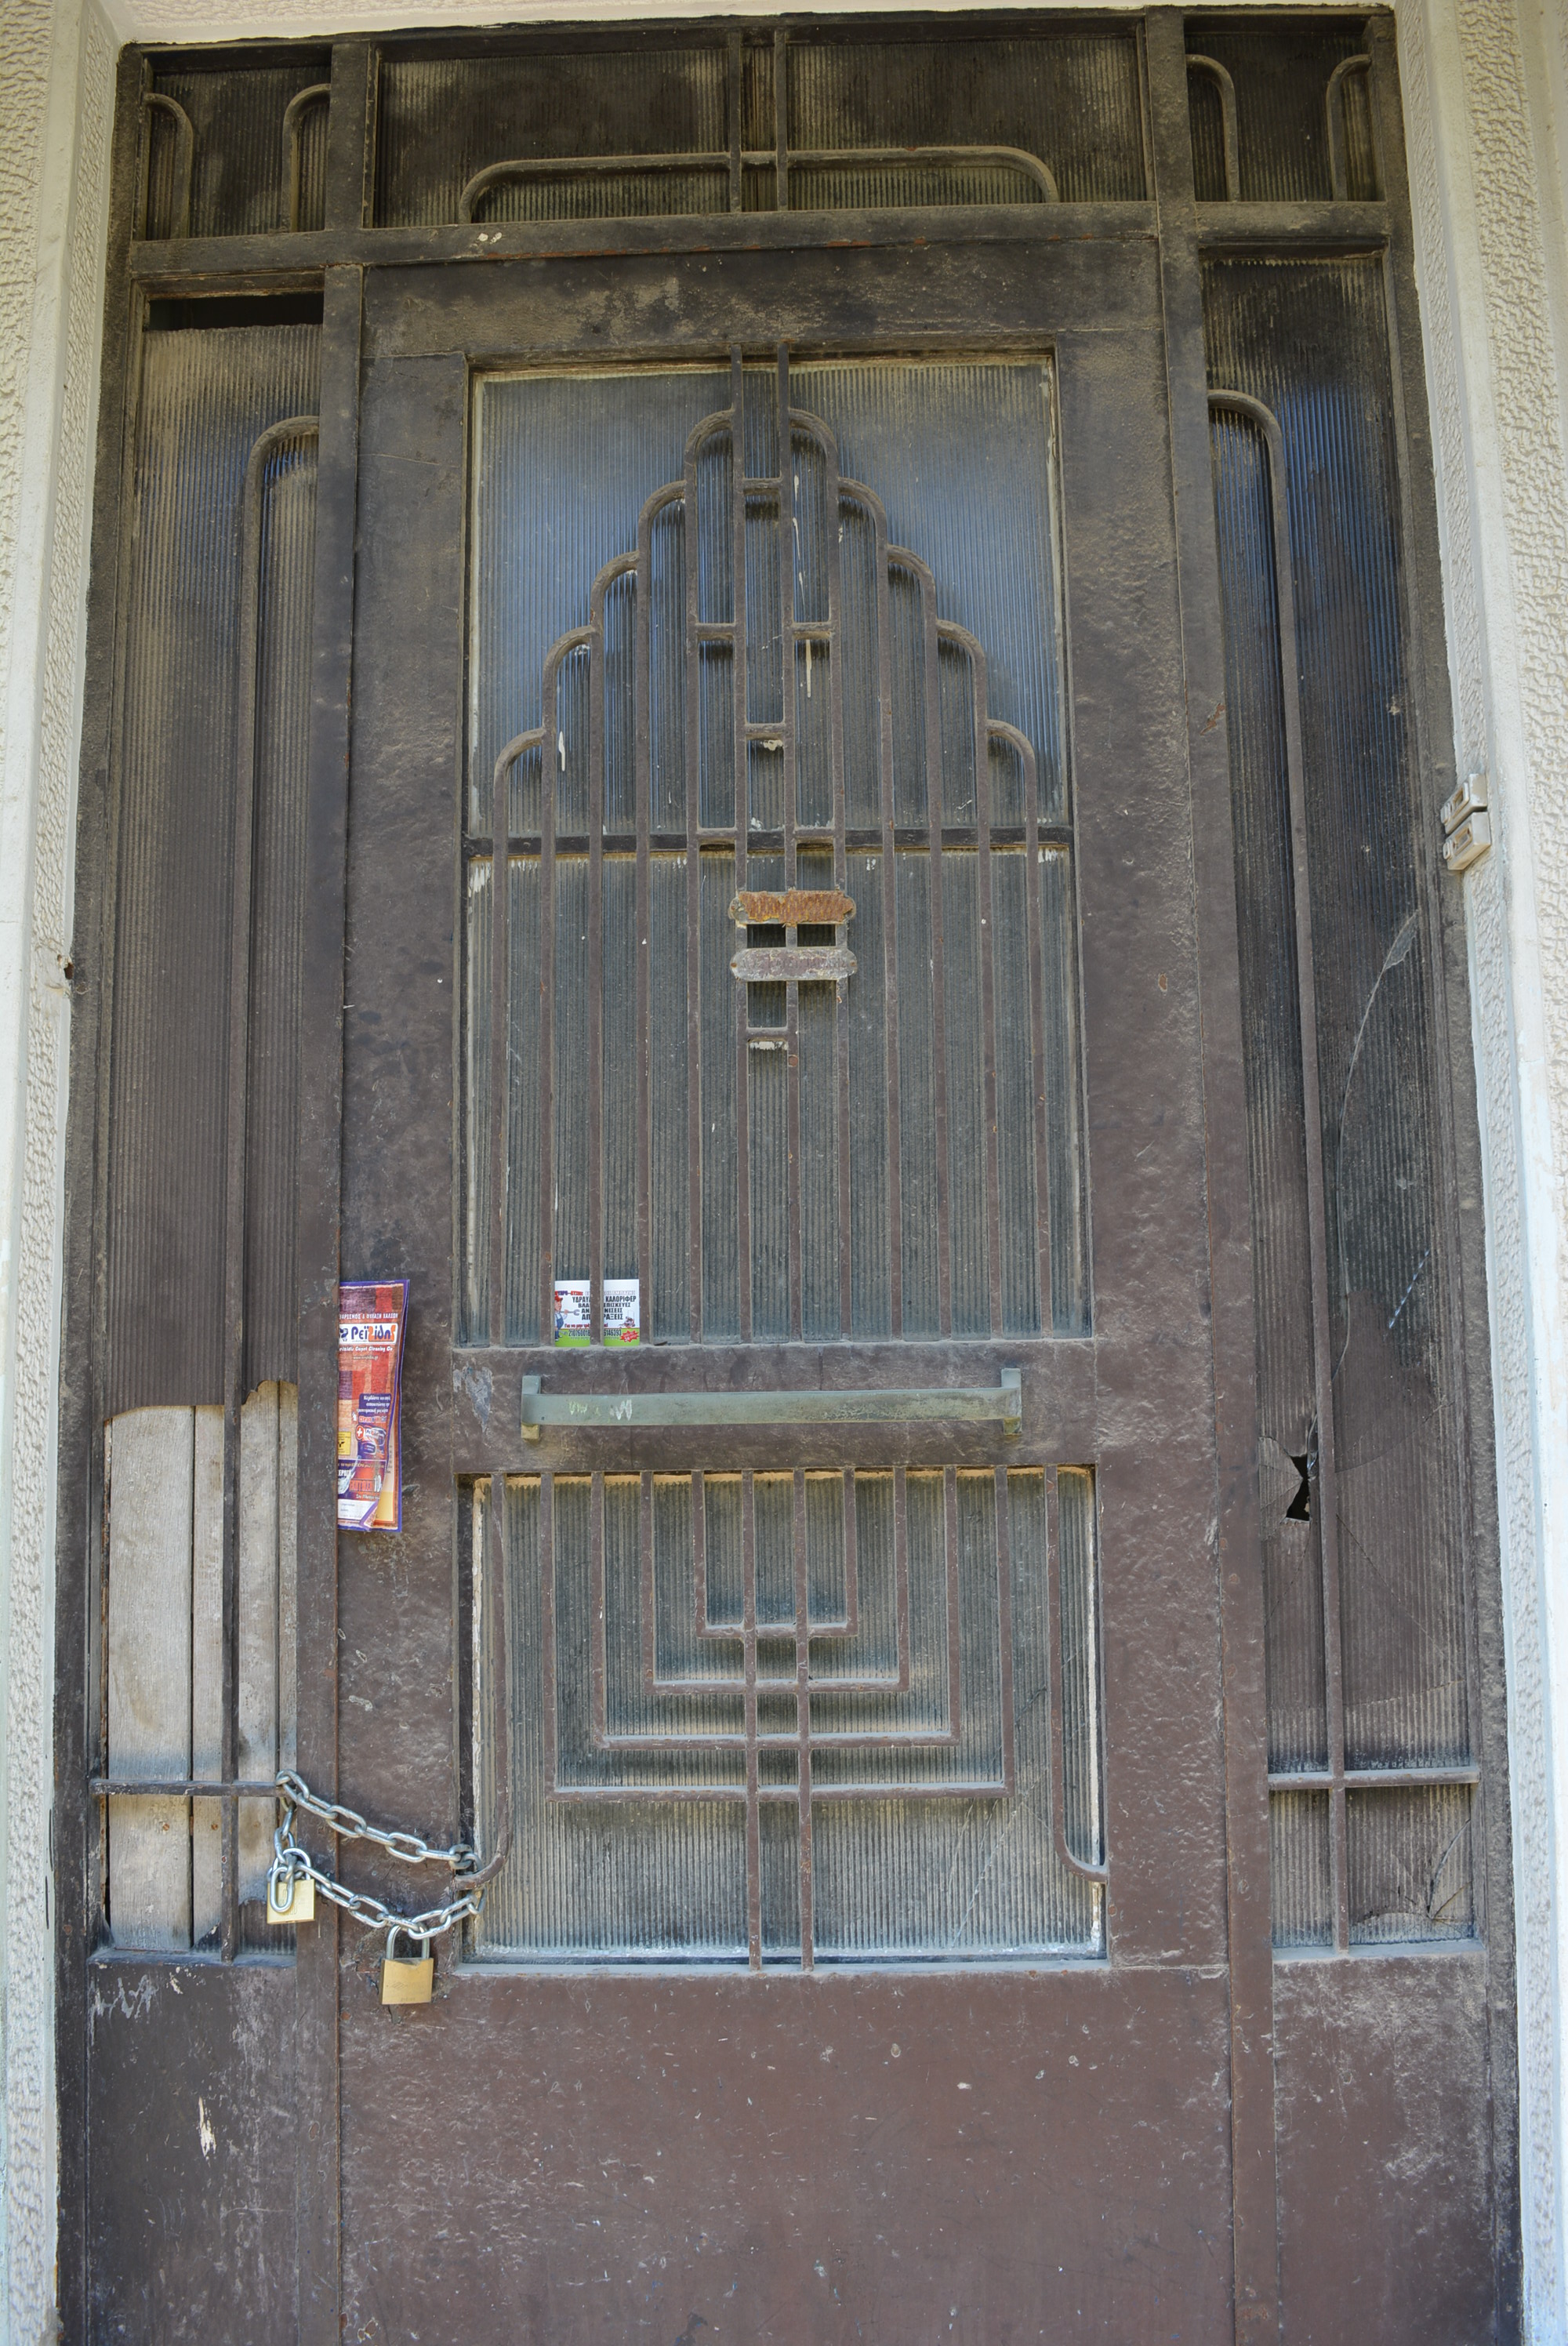 General view of entrance door